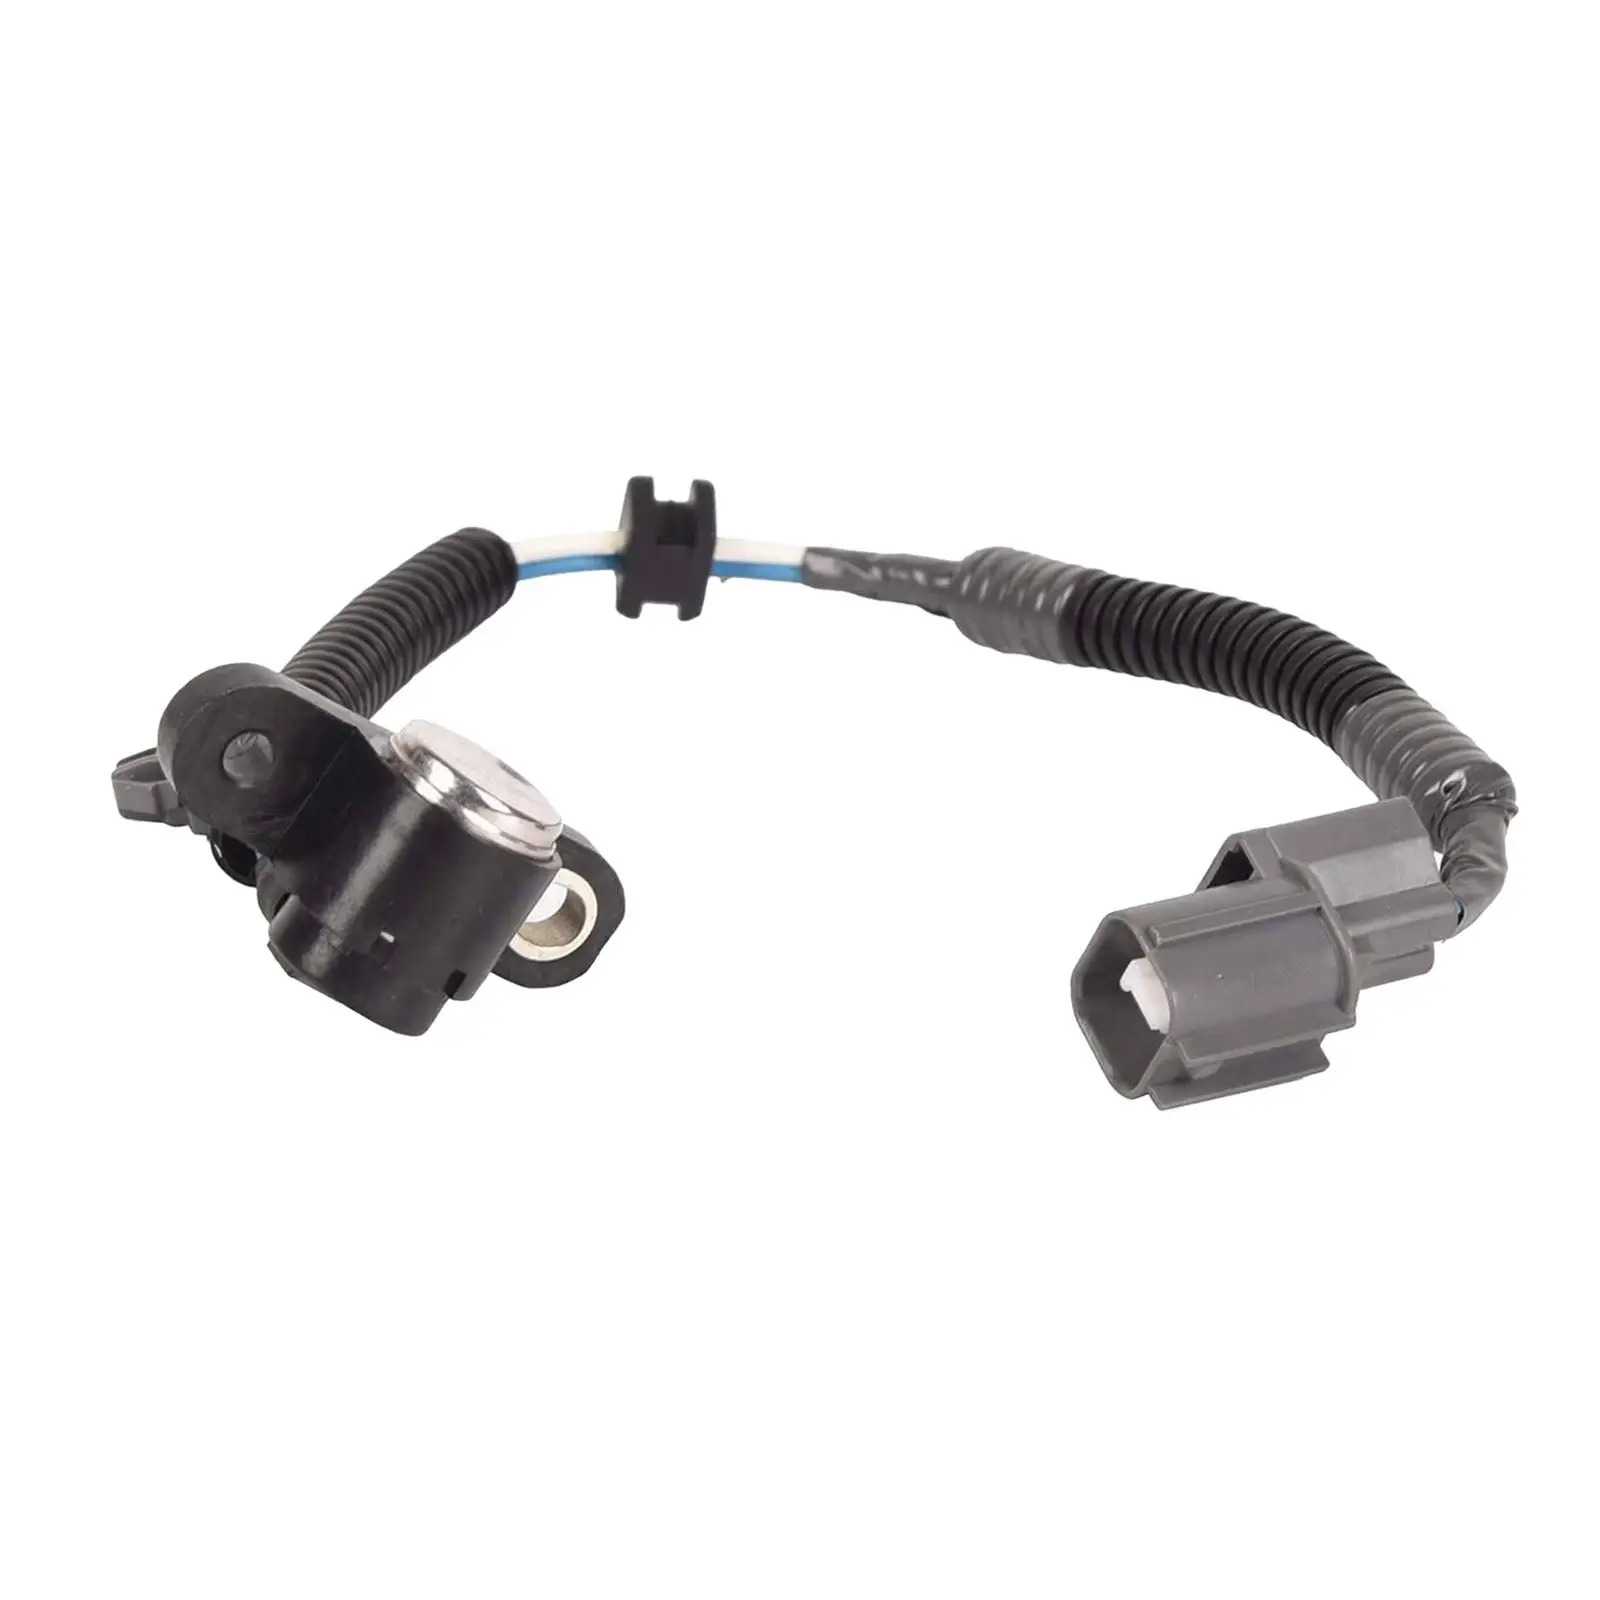 Car Crankshaft PULSE Position Sensor 37500P72A01 Ckp2083 37500-P72-A01 for Civic Del Sol Acura Integra Auto Accessories